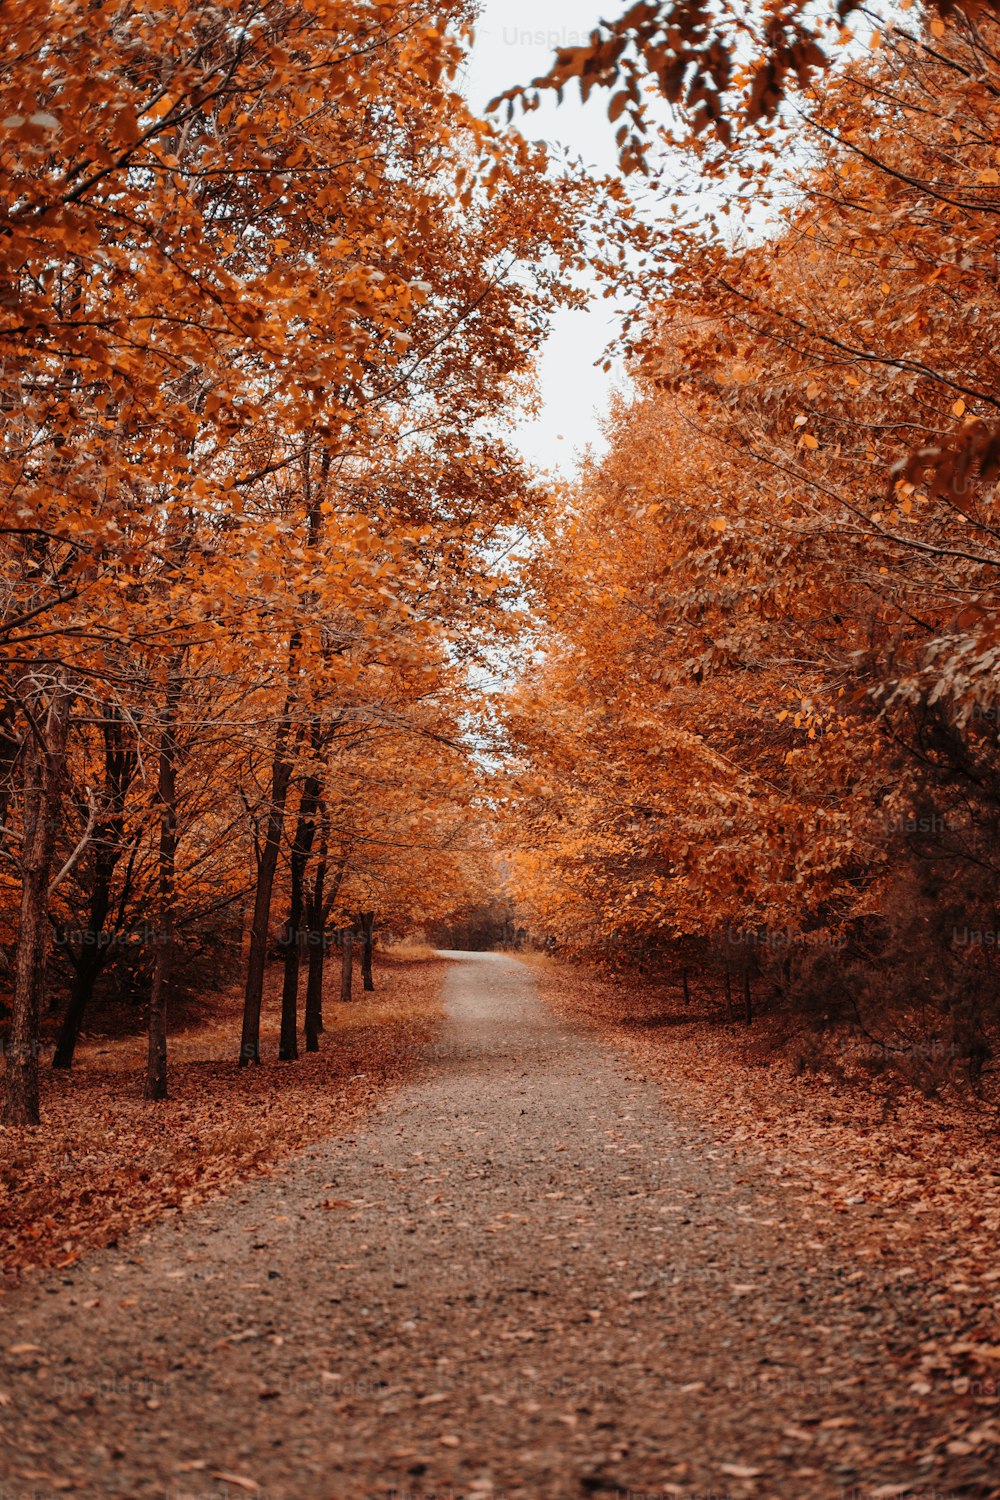 오렌지 잎사귀가 있는 나무로 둘러싸인 비포장 도로